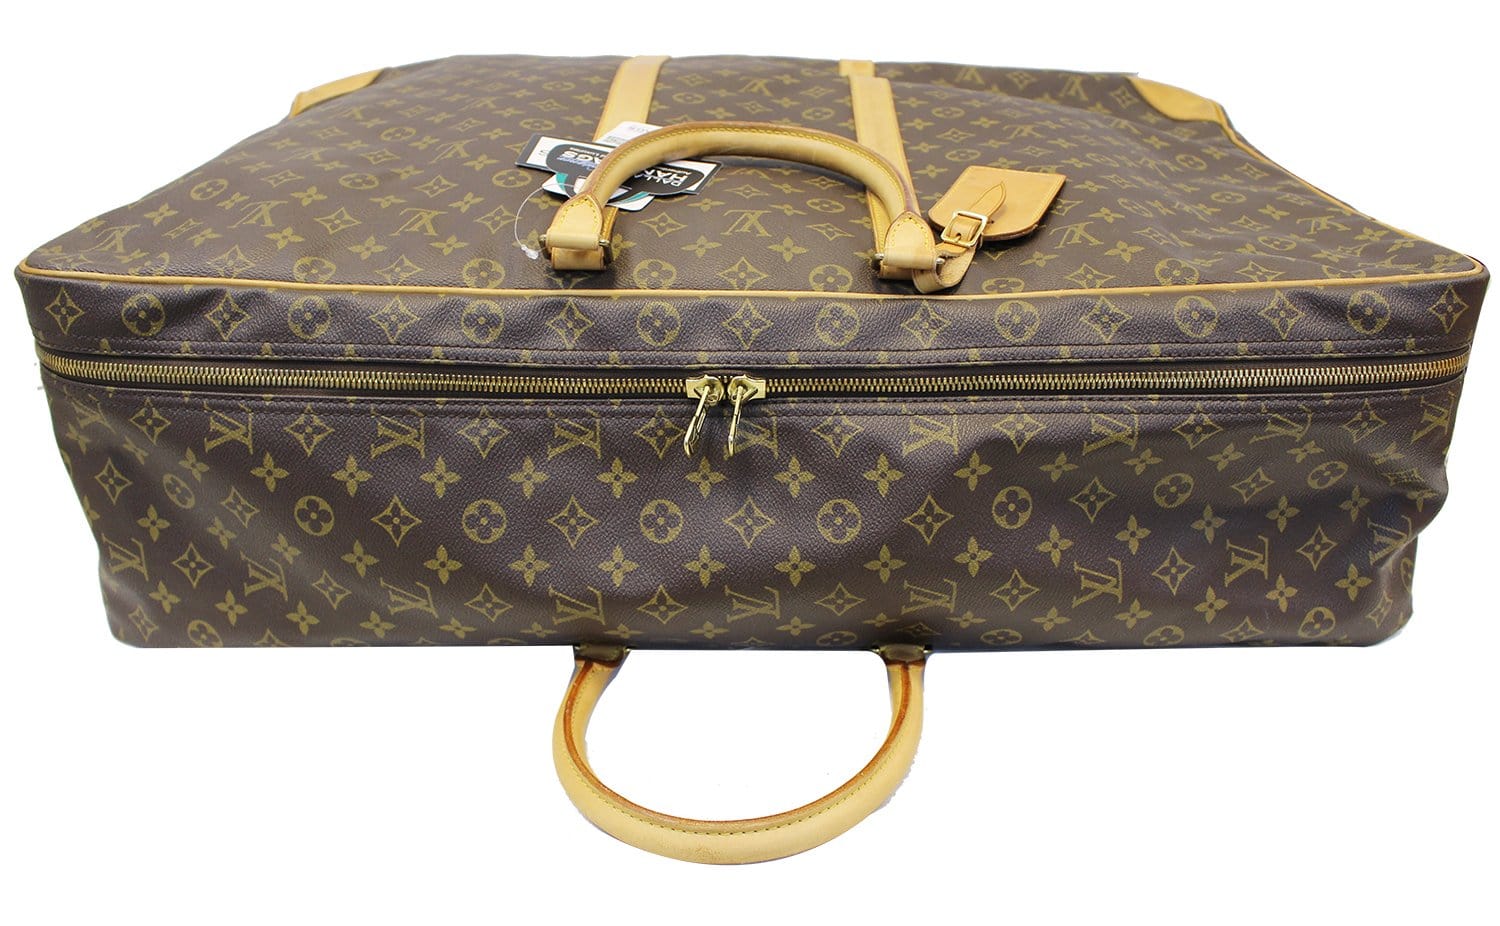 Sold at Auction: LOUIS VUITTON, LOUIS VUITTON Sac de voyage Sirius 70 -  Sirius 70 travel bag